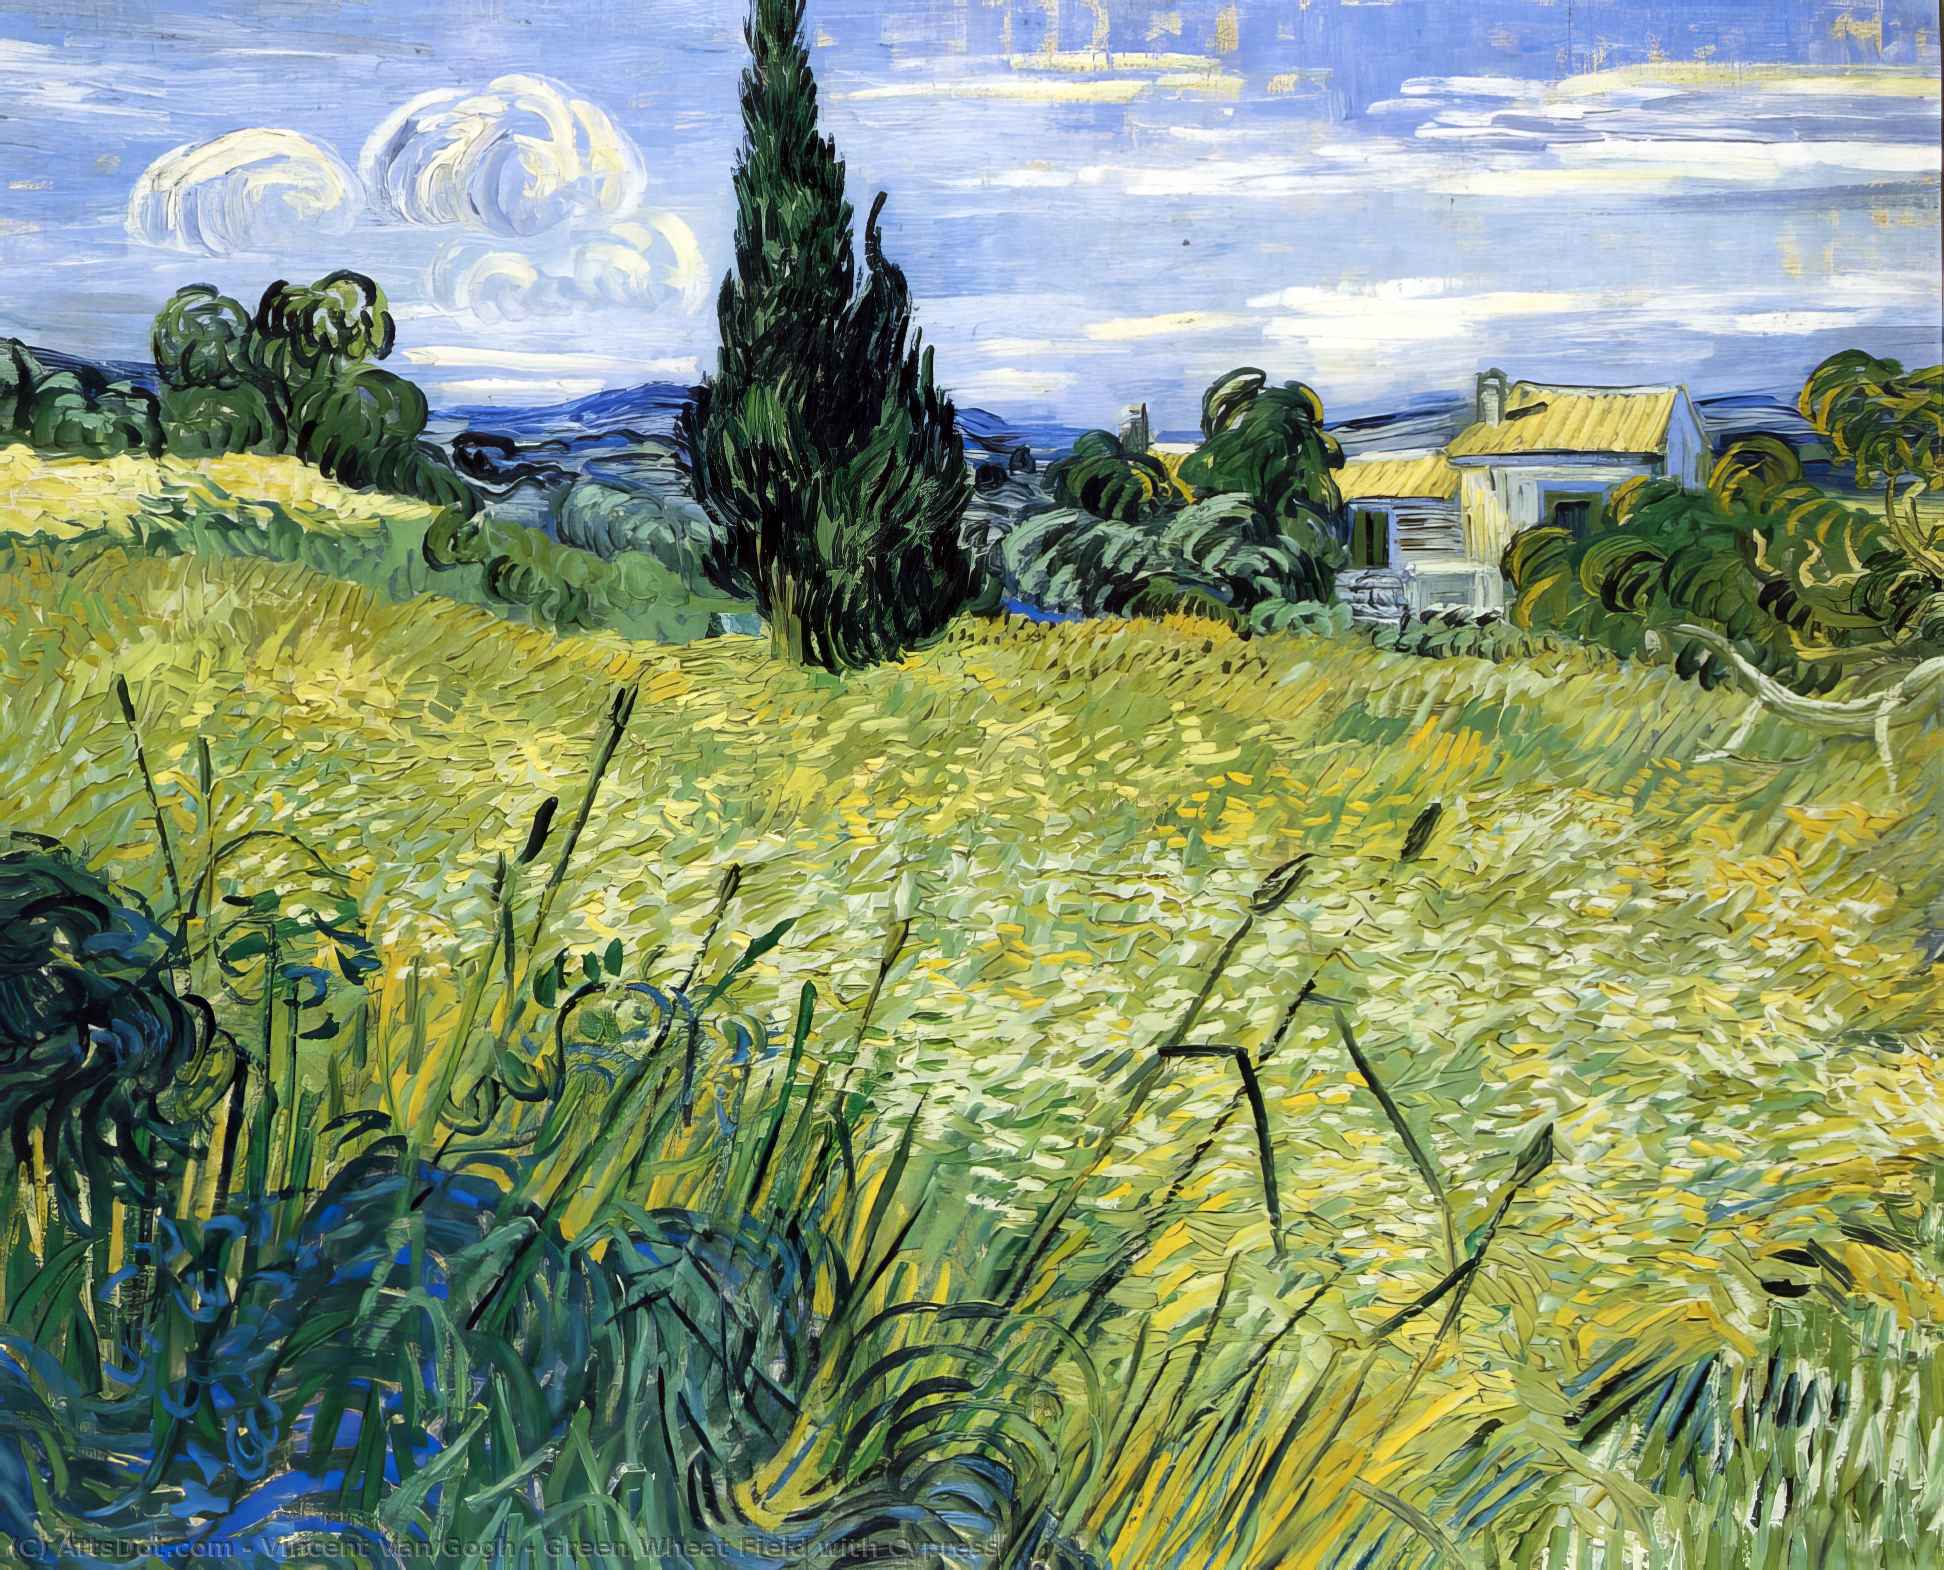 Ordinare Riproduzioni Di Quadri Campo di grano verde con Cypress, 1889 di Vincent Van Gogh (1853-1890, Netherlands) | ArtsDot.com